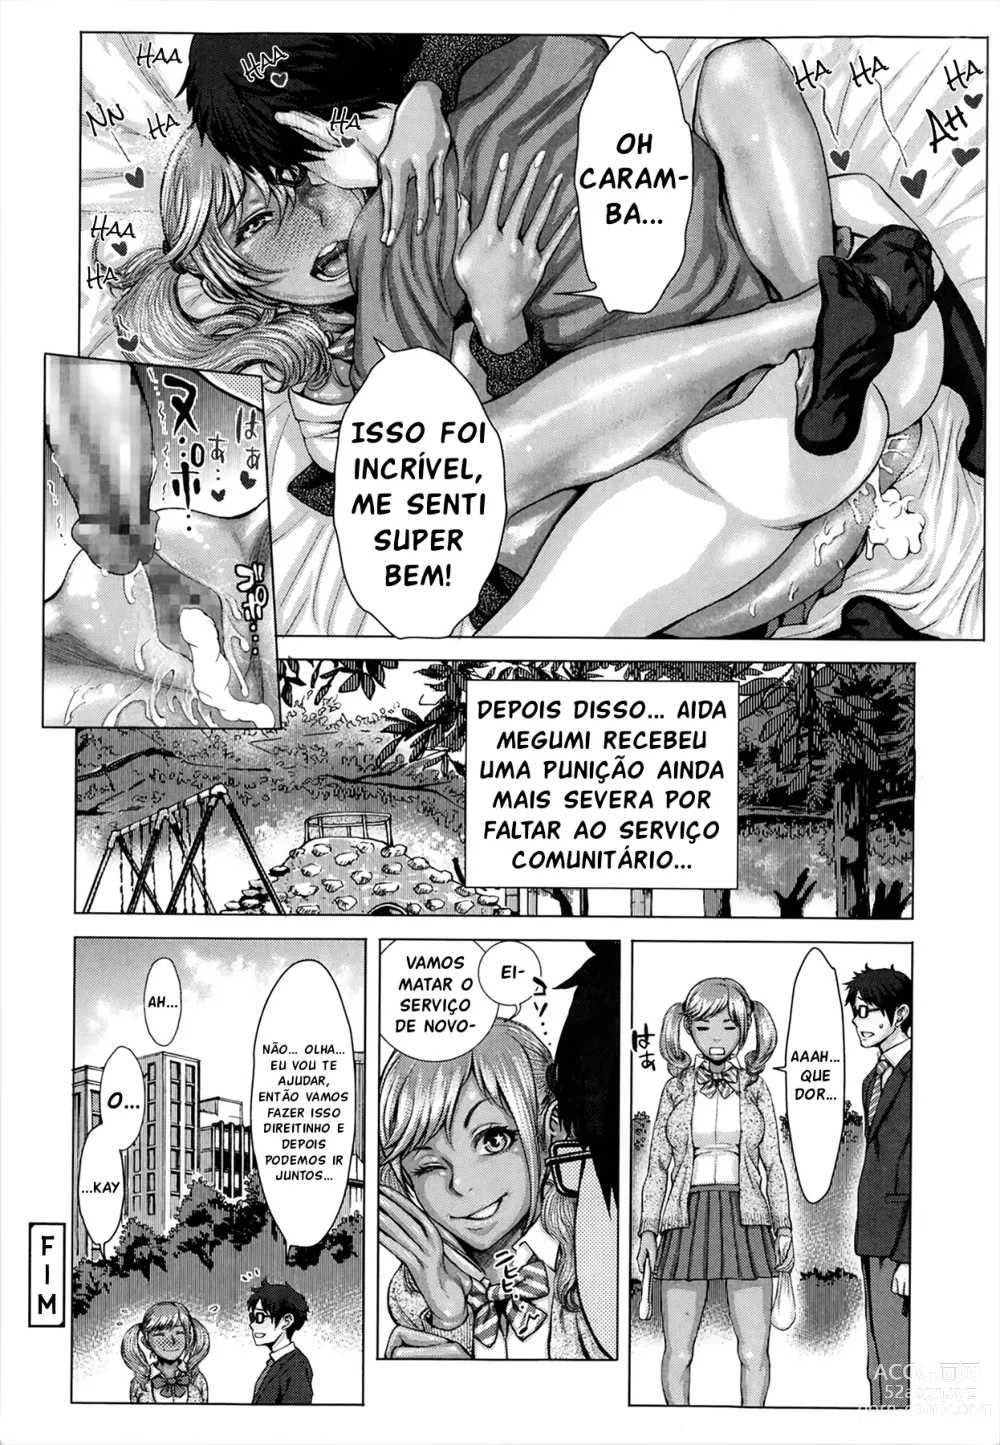 Page 24 of manga Serviço Comunitário Negro